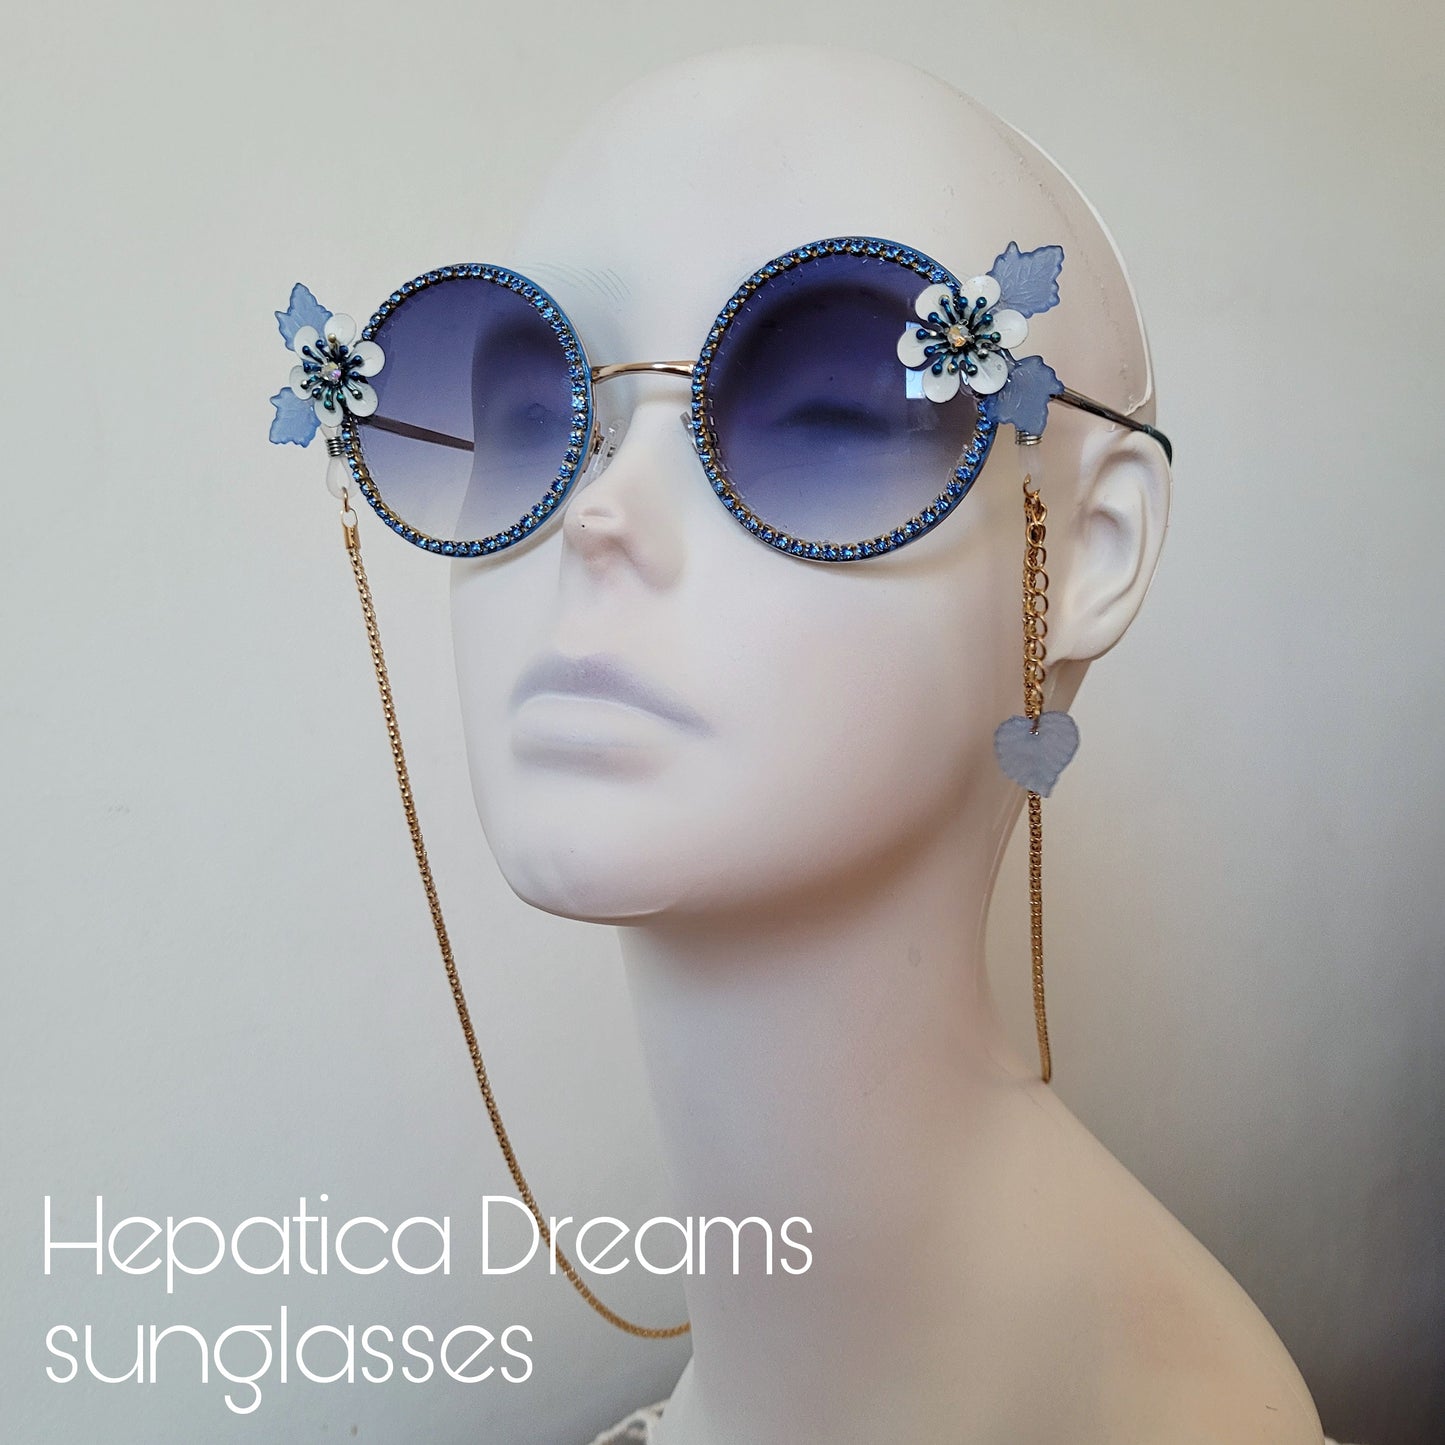 Bumblebee Dreams collection: the Hepatica Dreams Sunglasses (Göteborg 400 år edition)